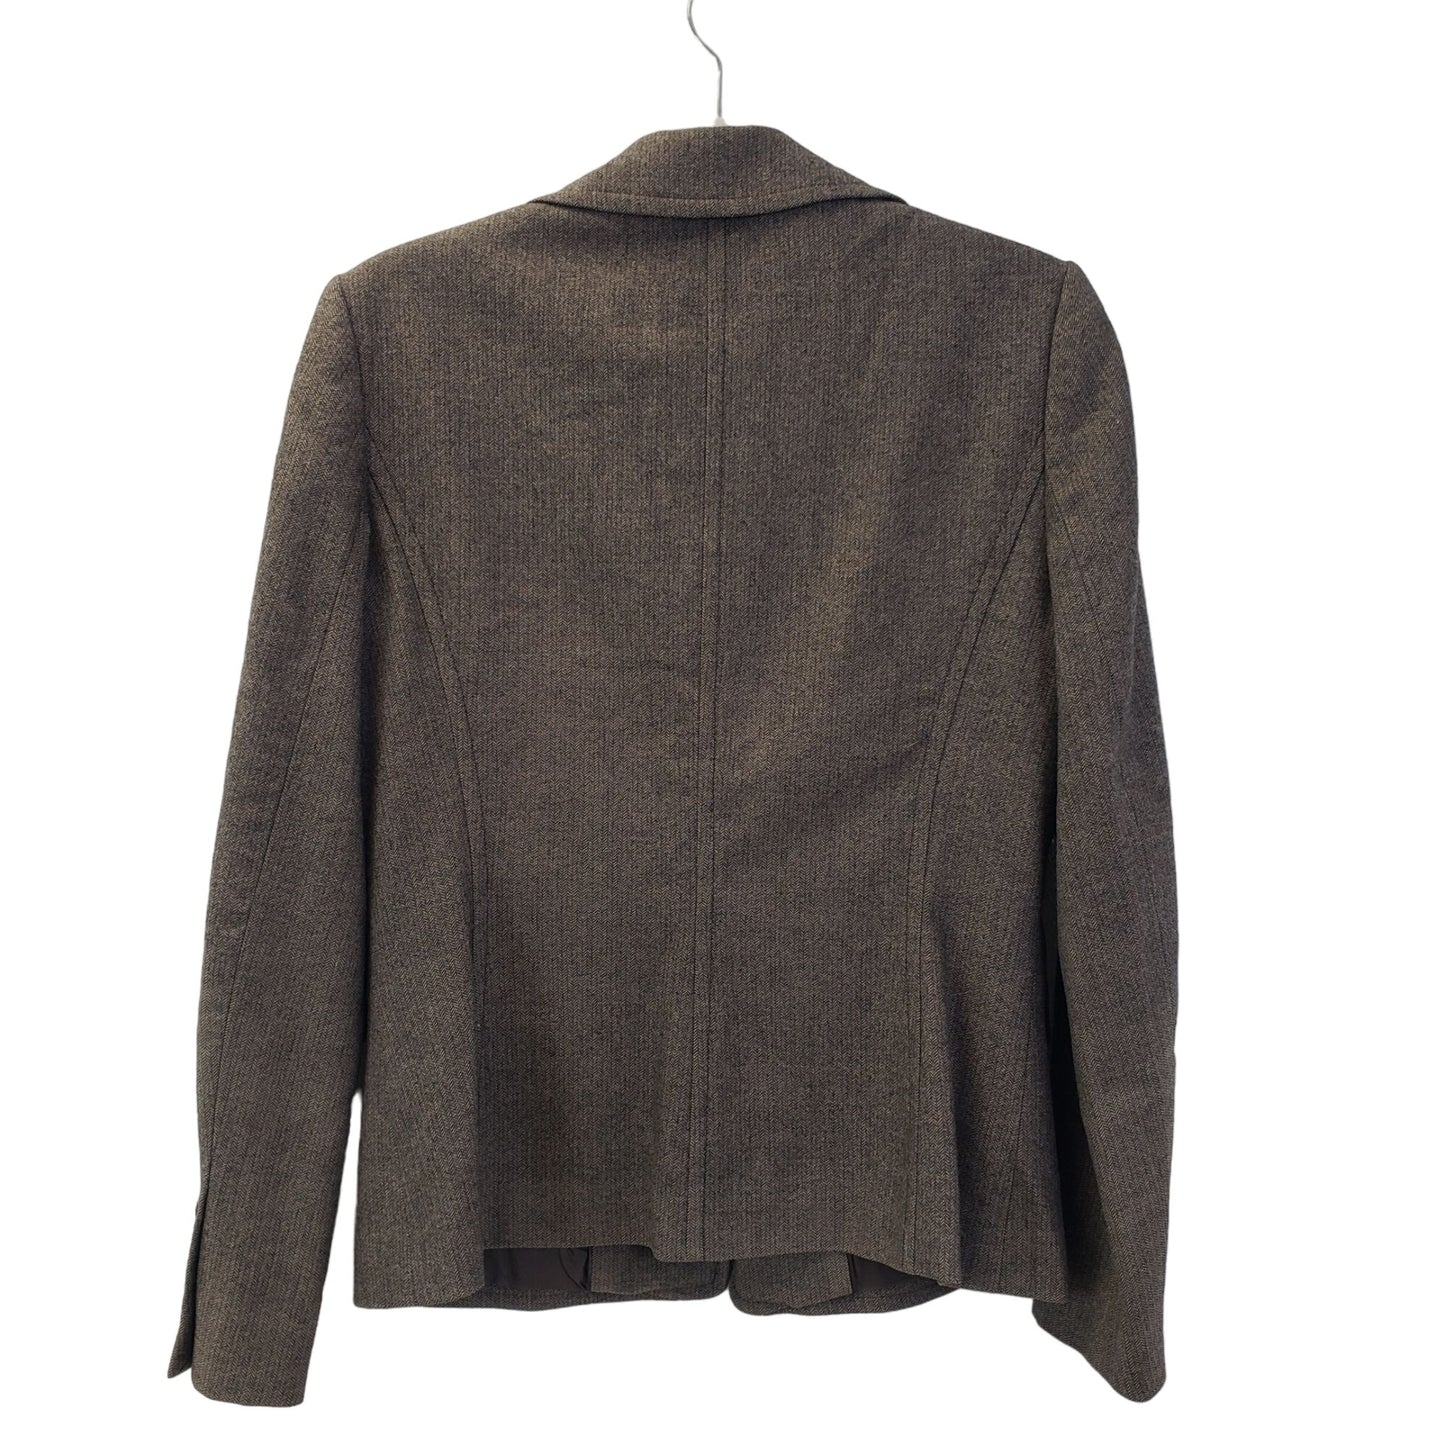 Ann Taylor Wool & Cashmere Blend Two Button Blazer Jacket Size 4